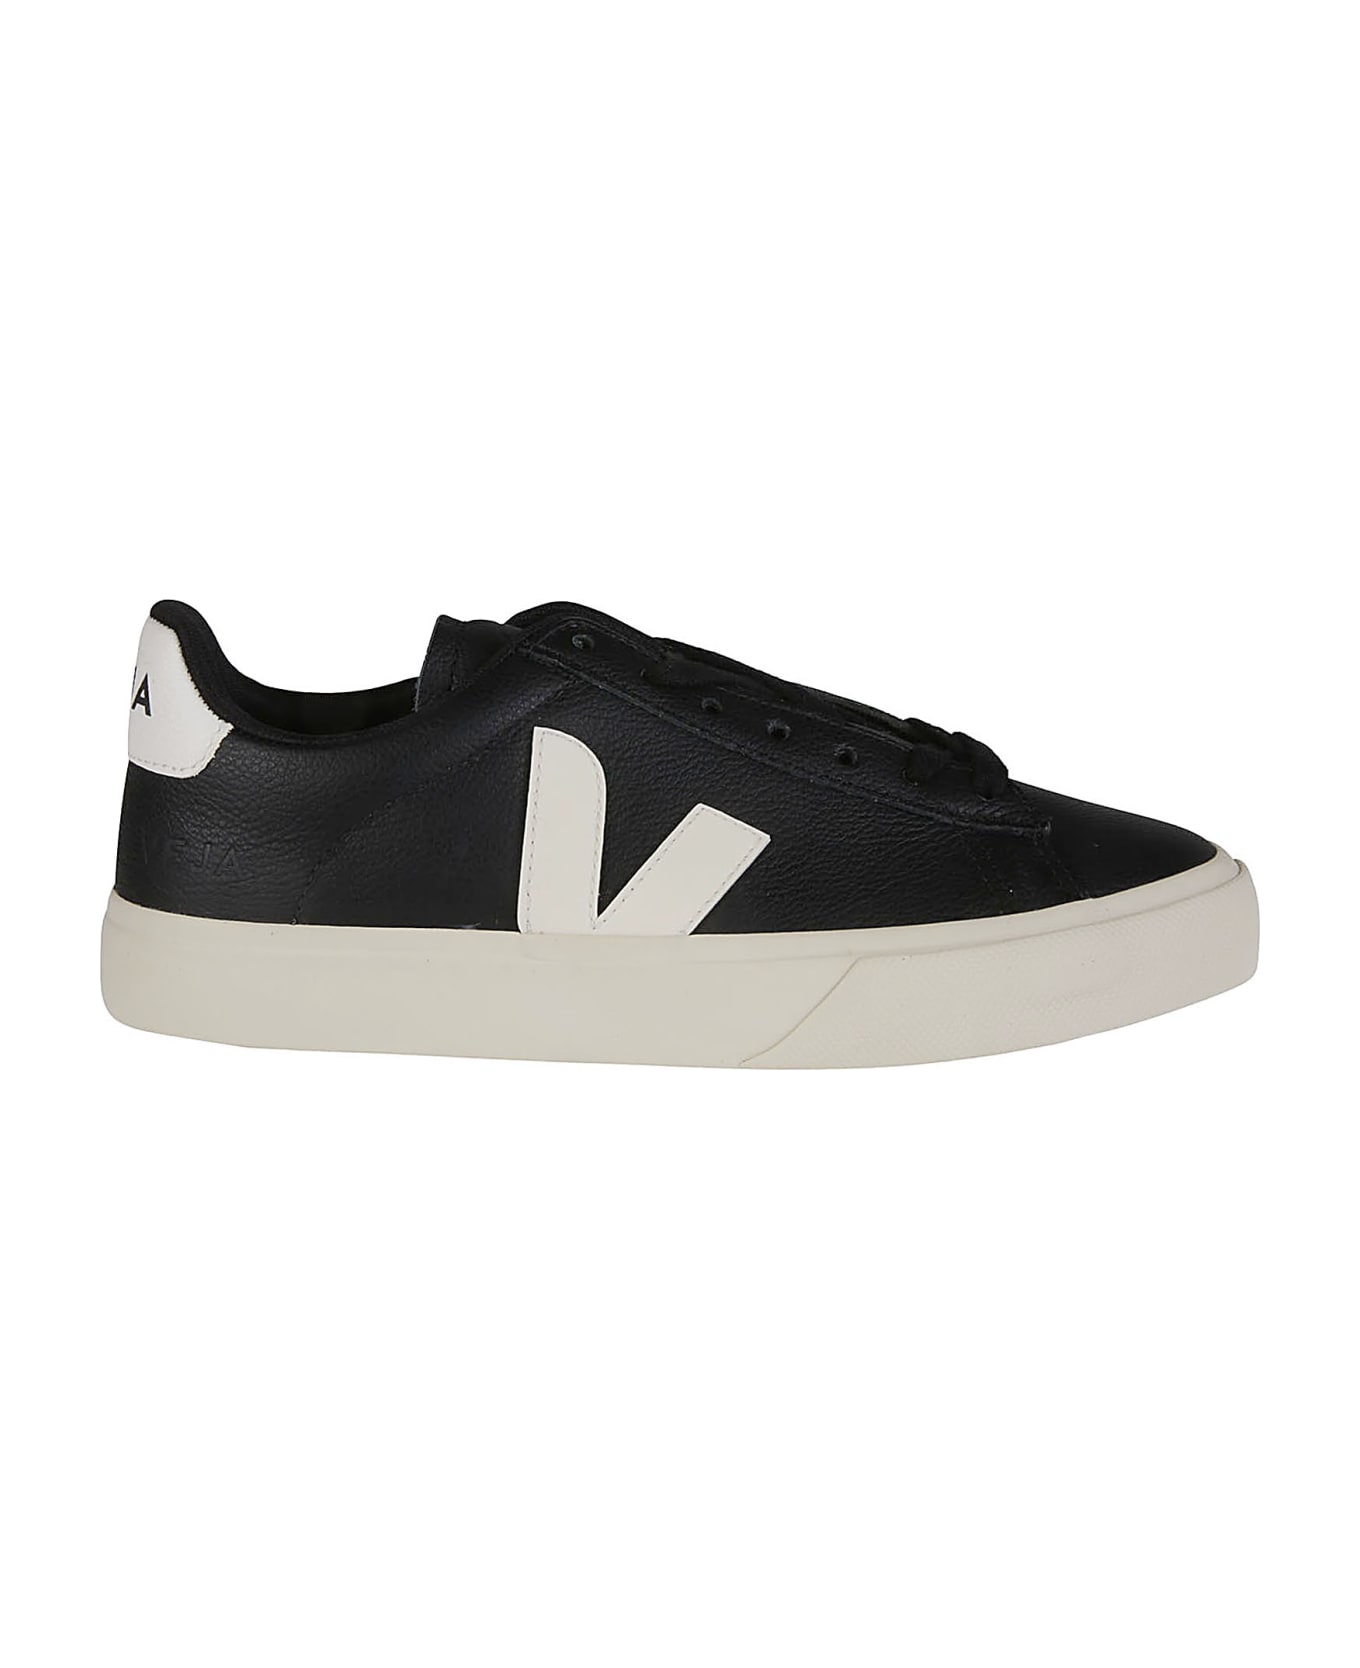 Veja Campo Sneakers - Black/white